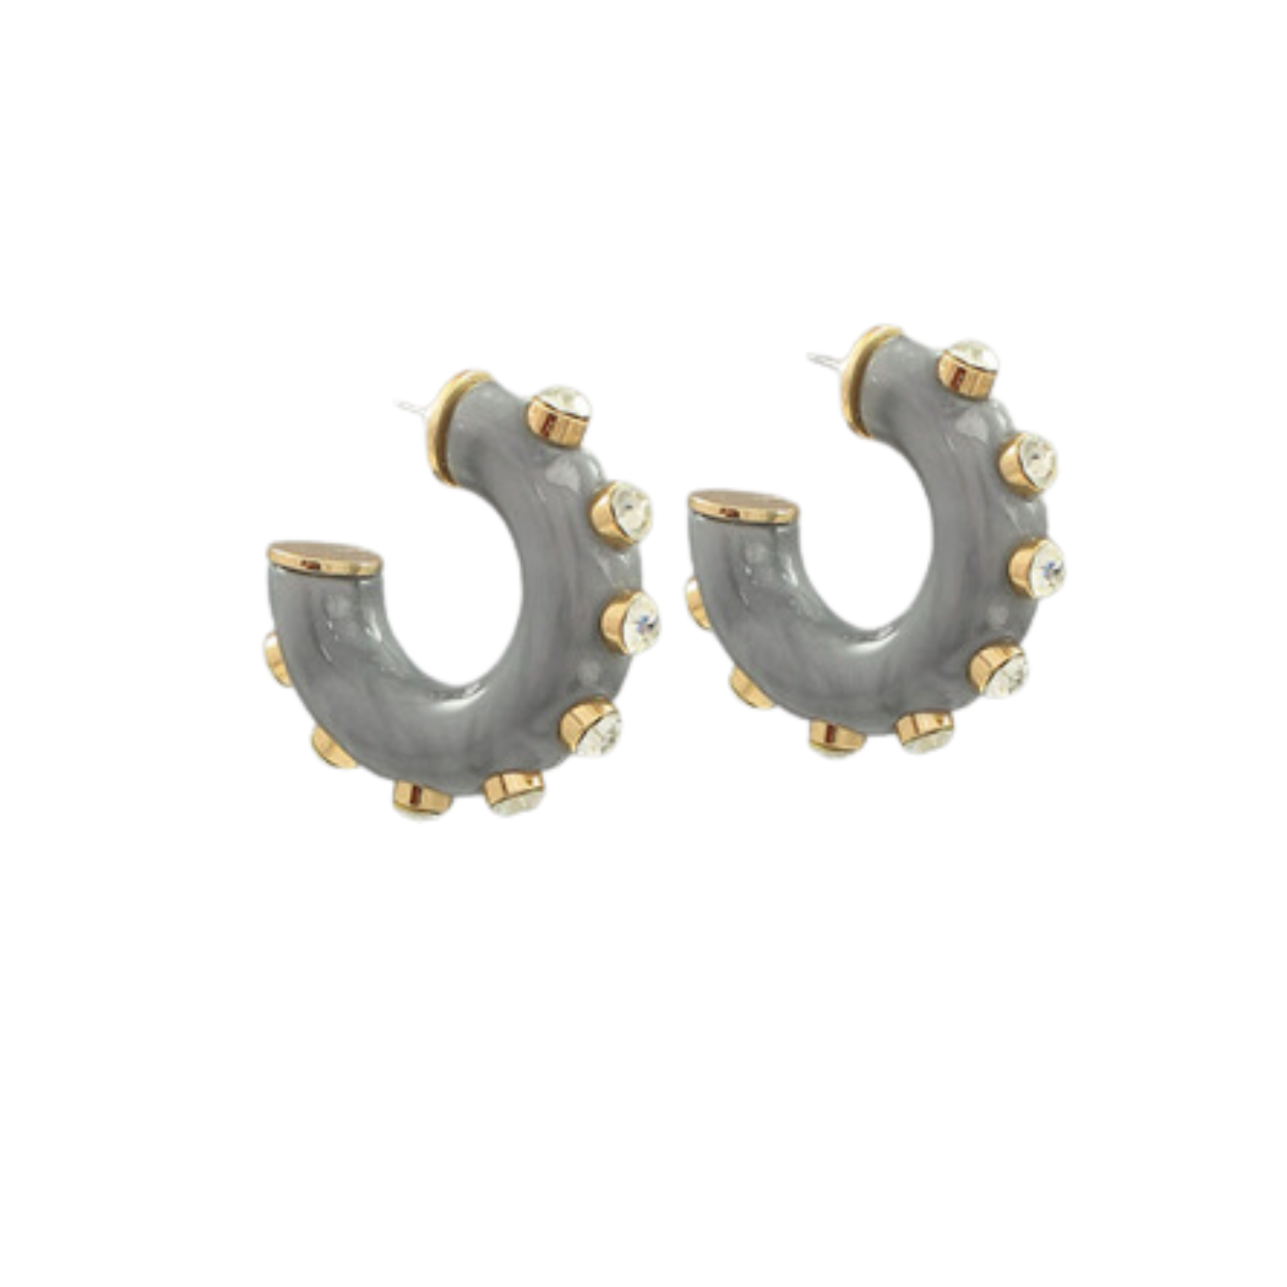 Acrylic Hoop with Rhinestone Earrings - Grey